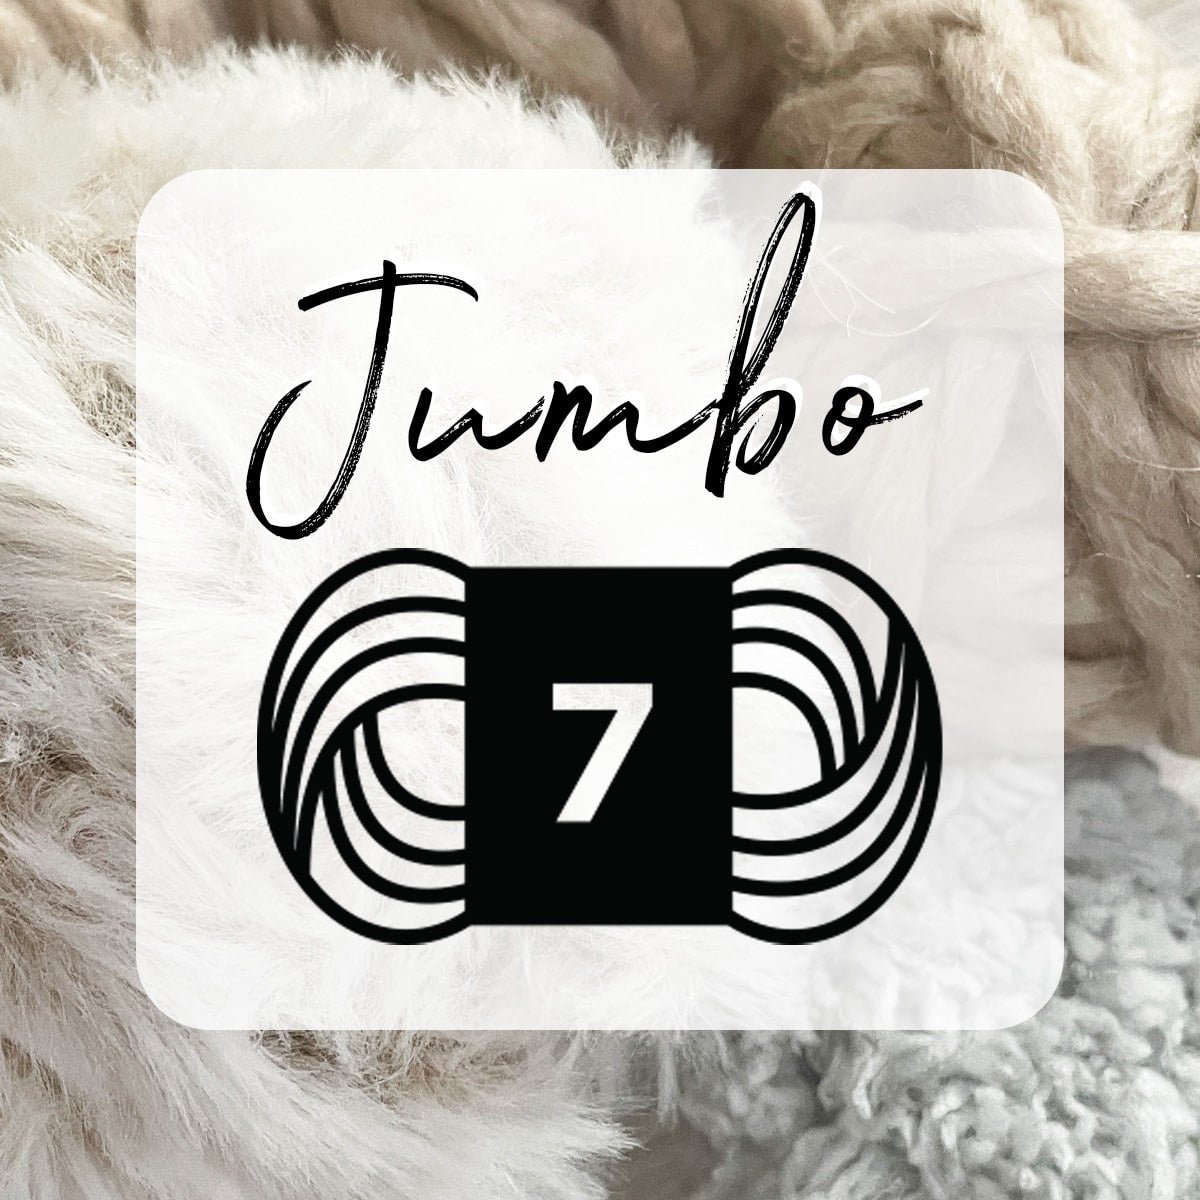 Free Jumbo Weight 7 Patterns – Lion Brand Yarn